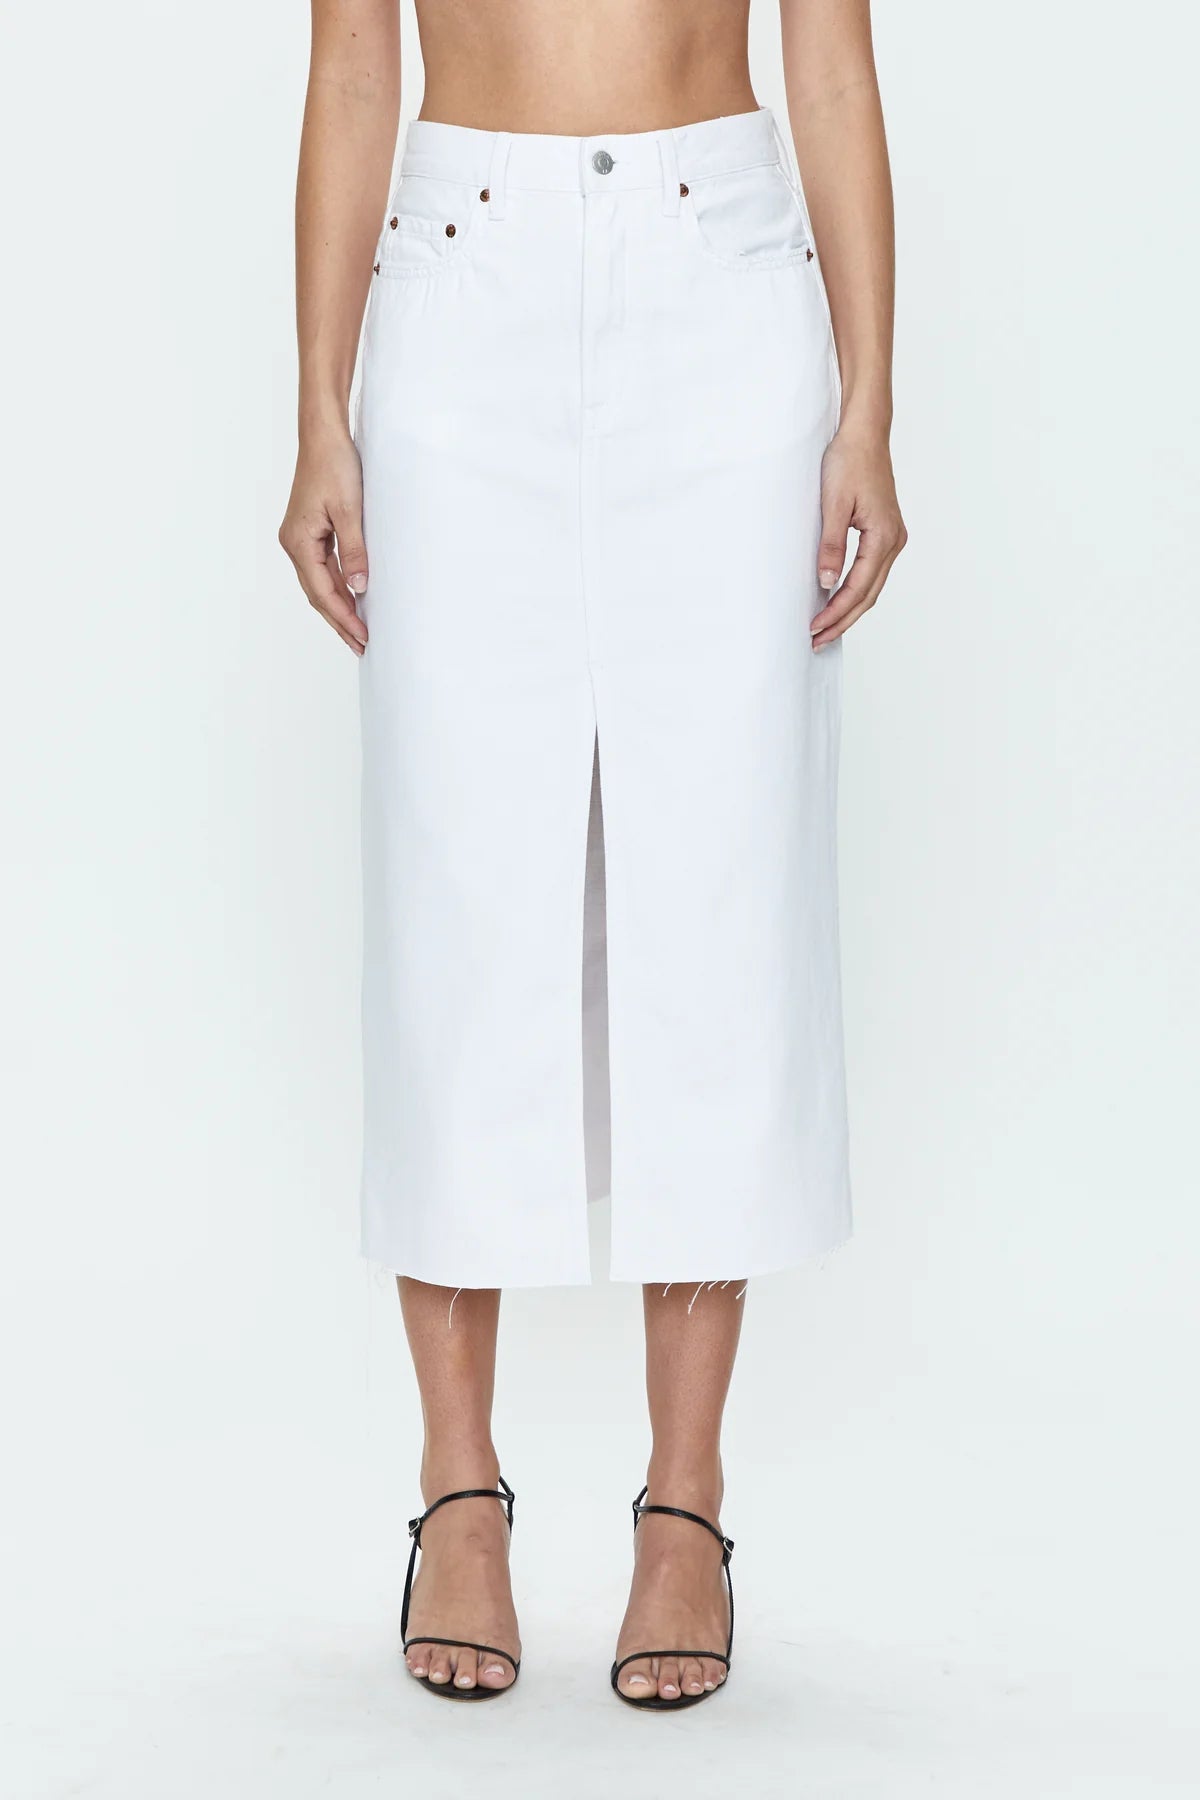 Alice -  Midi Skirt, White